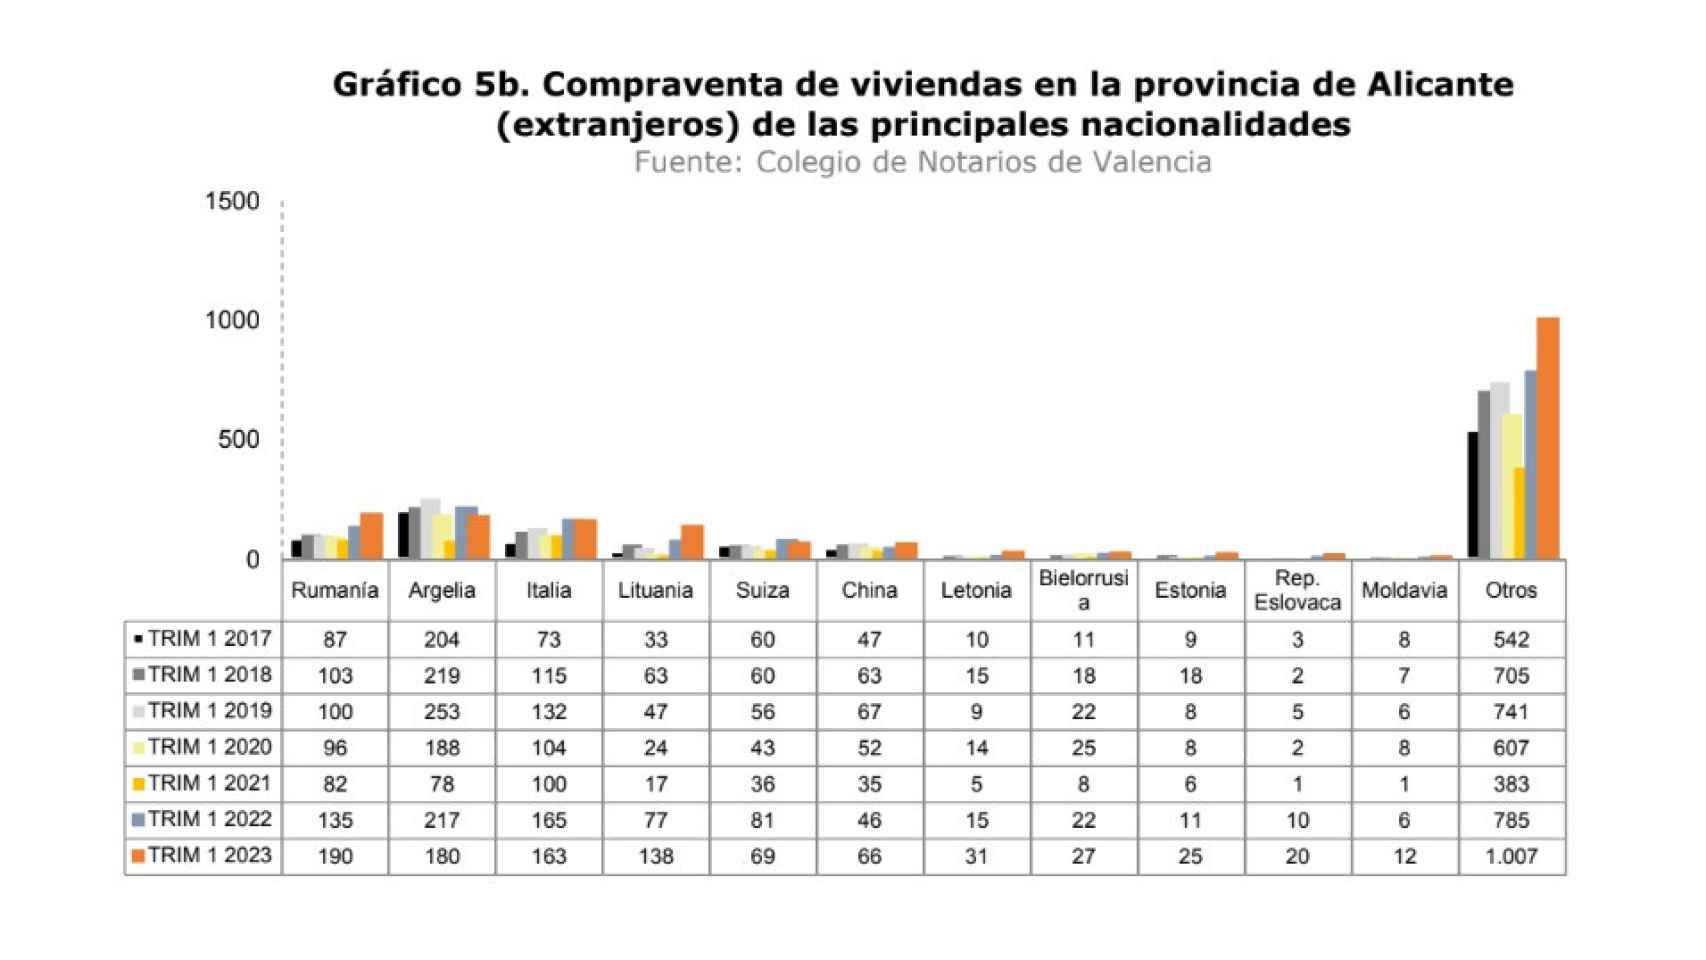 Compraventa de viviendas por extranjeros en la provincia de Alicante (2).